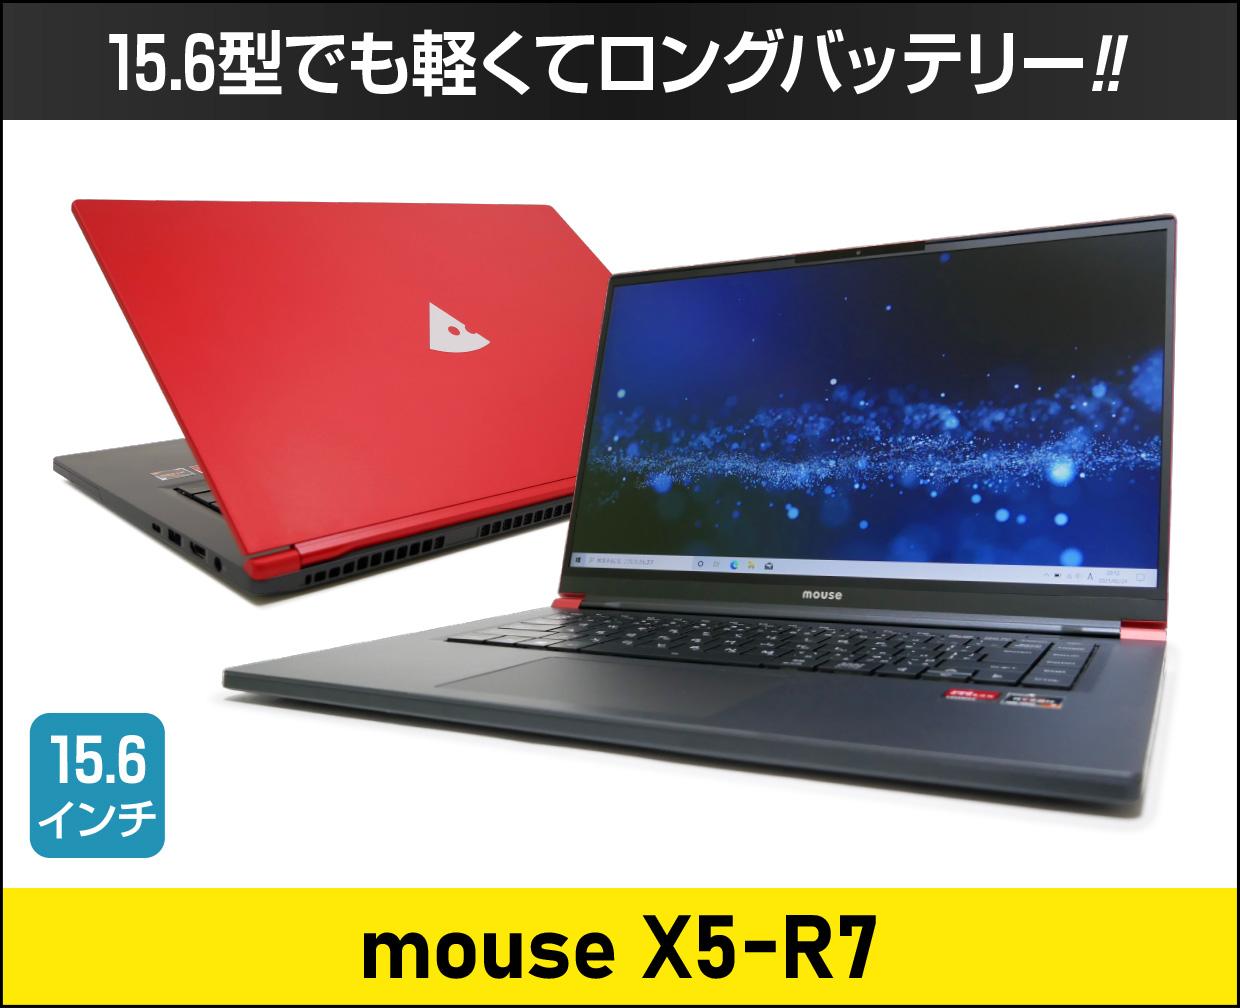 【ノートパソコン 15.6型 16gb 】マウスコンピューター mouse X5